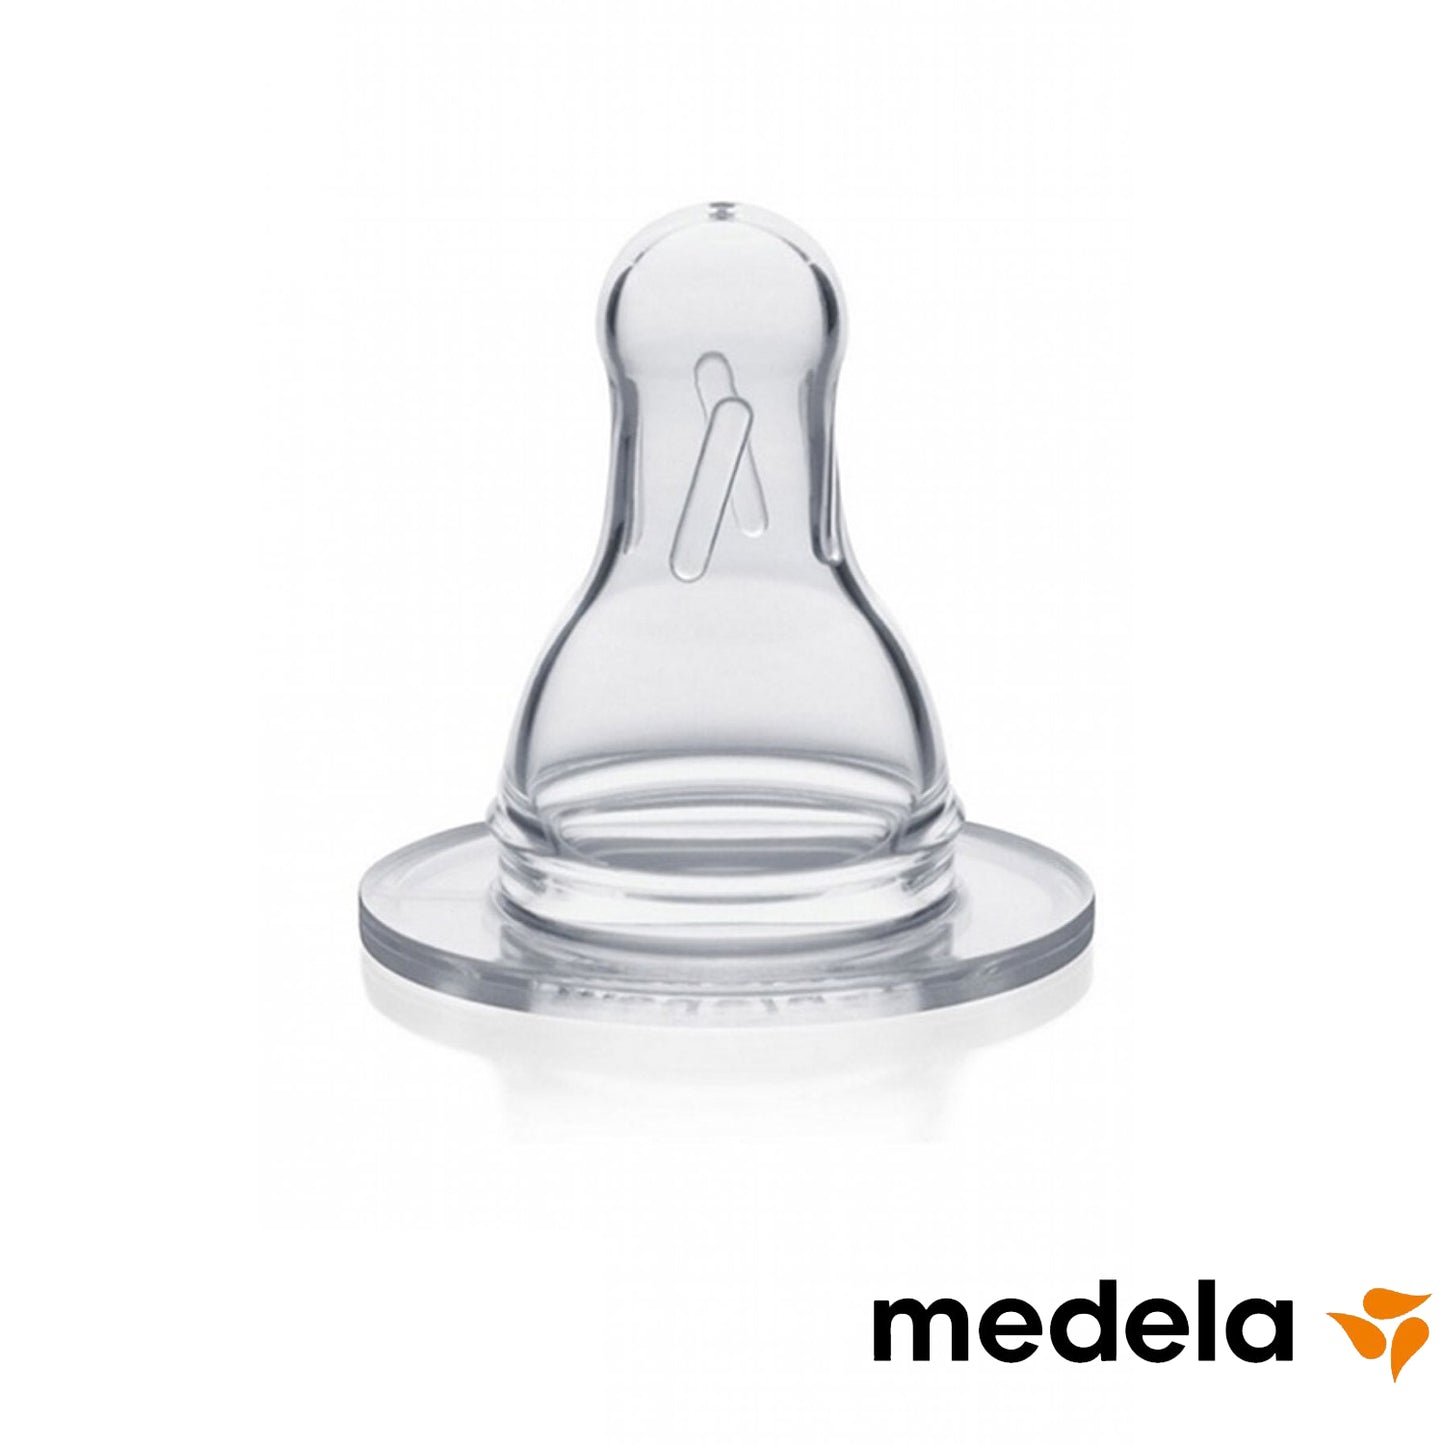 Medela - Medium flow silicone teat